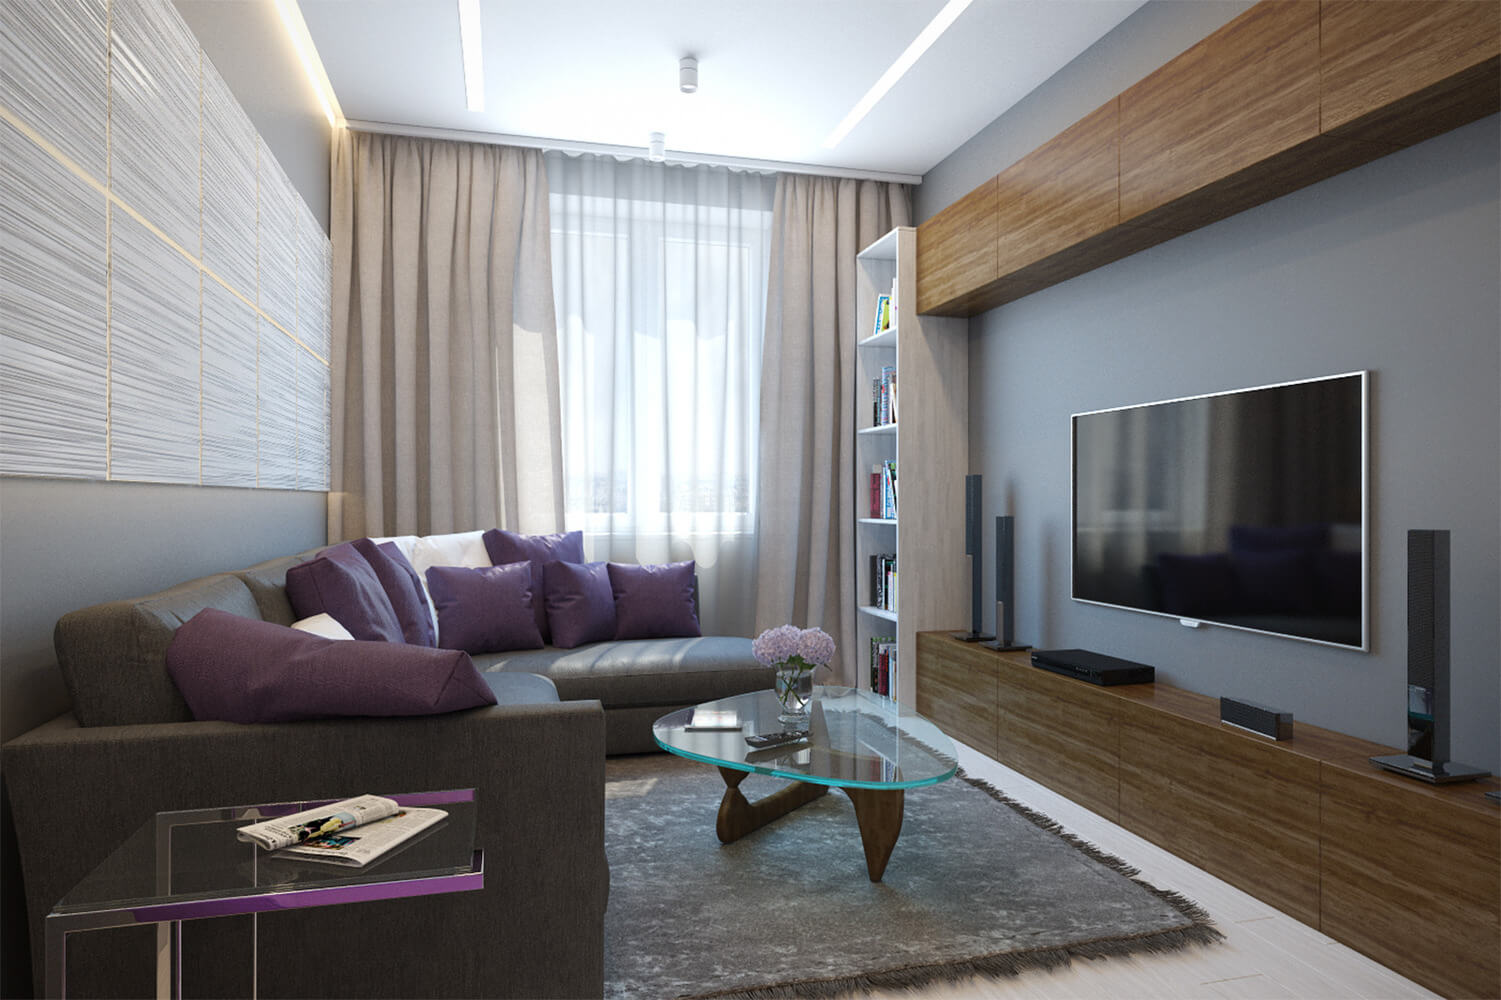 Интерьер гостиной в квартире 18 кв м в современном стиле недорого фото стенкой и диваном